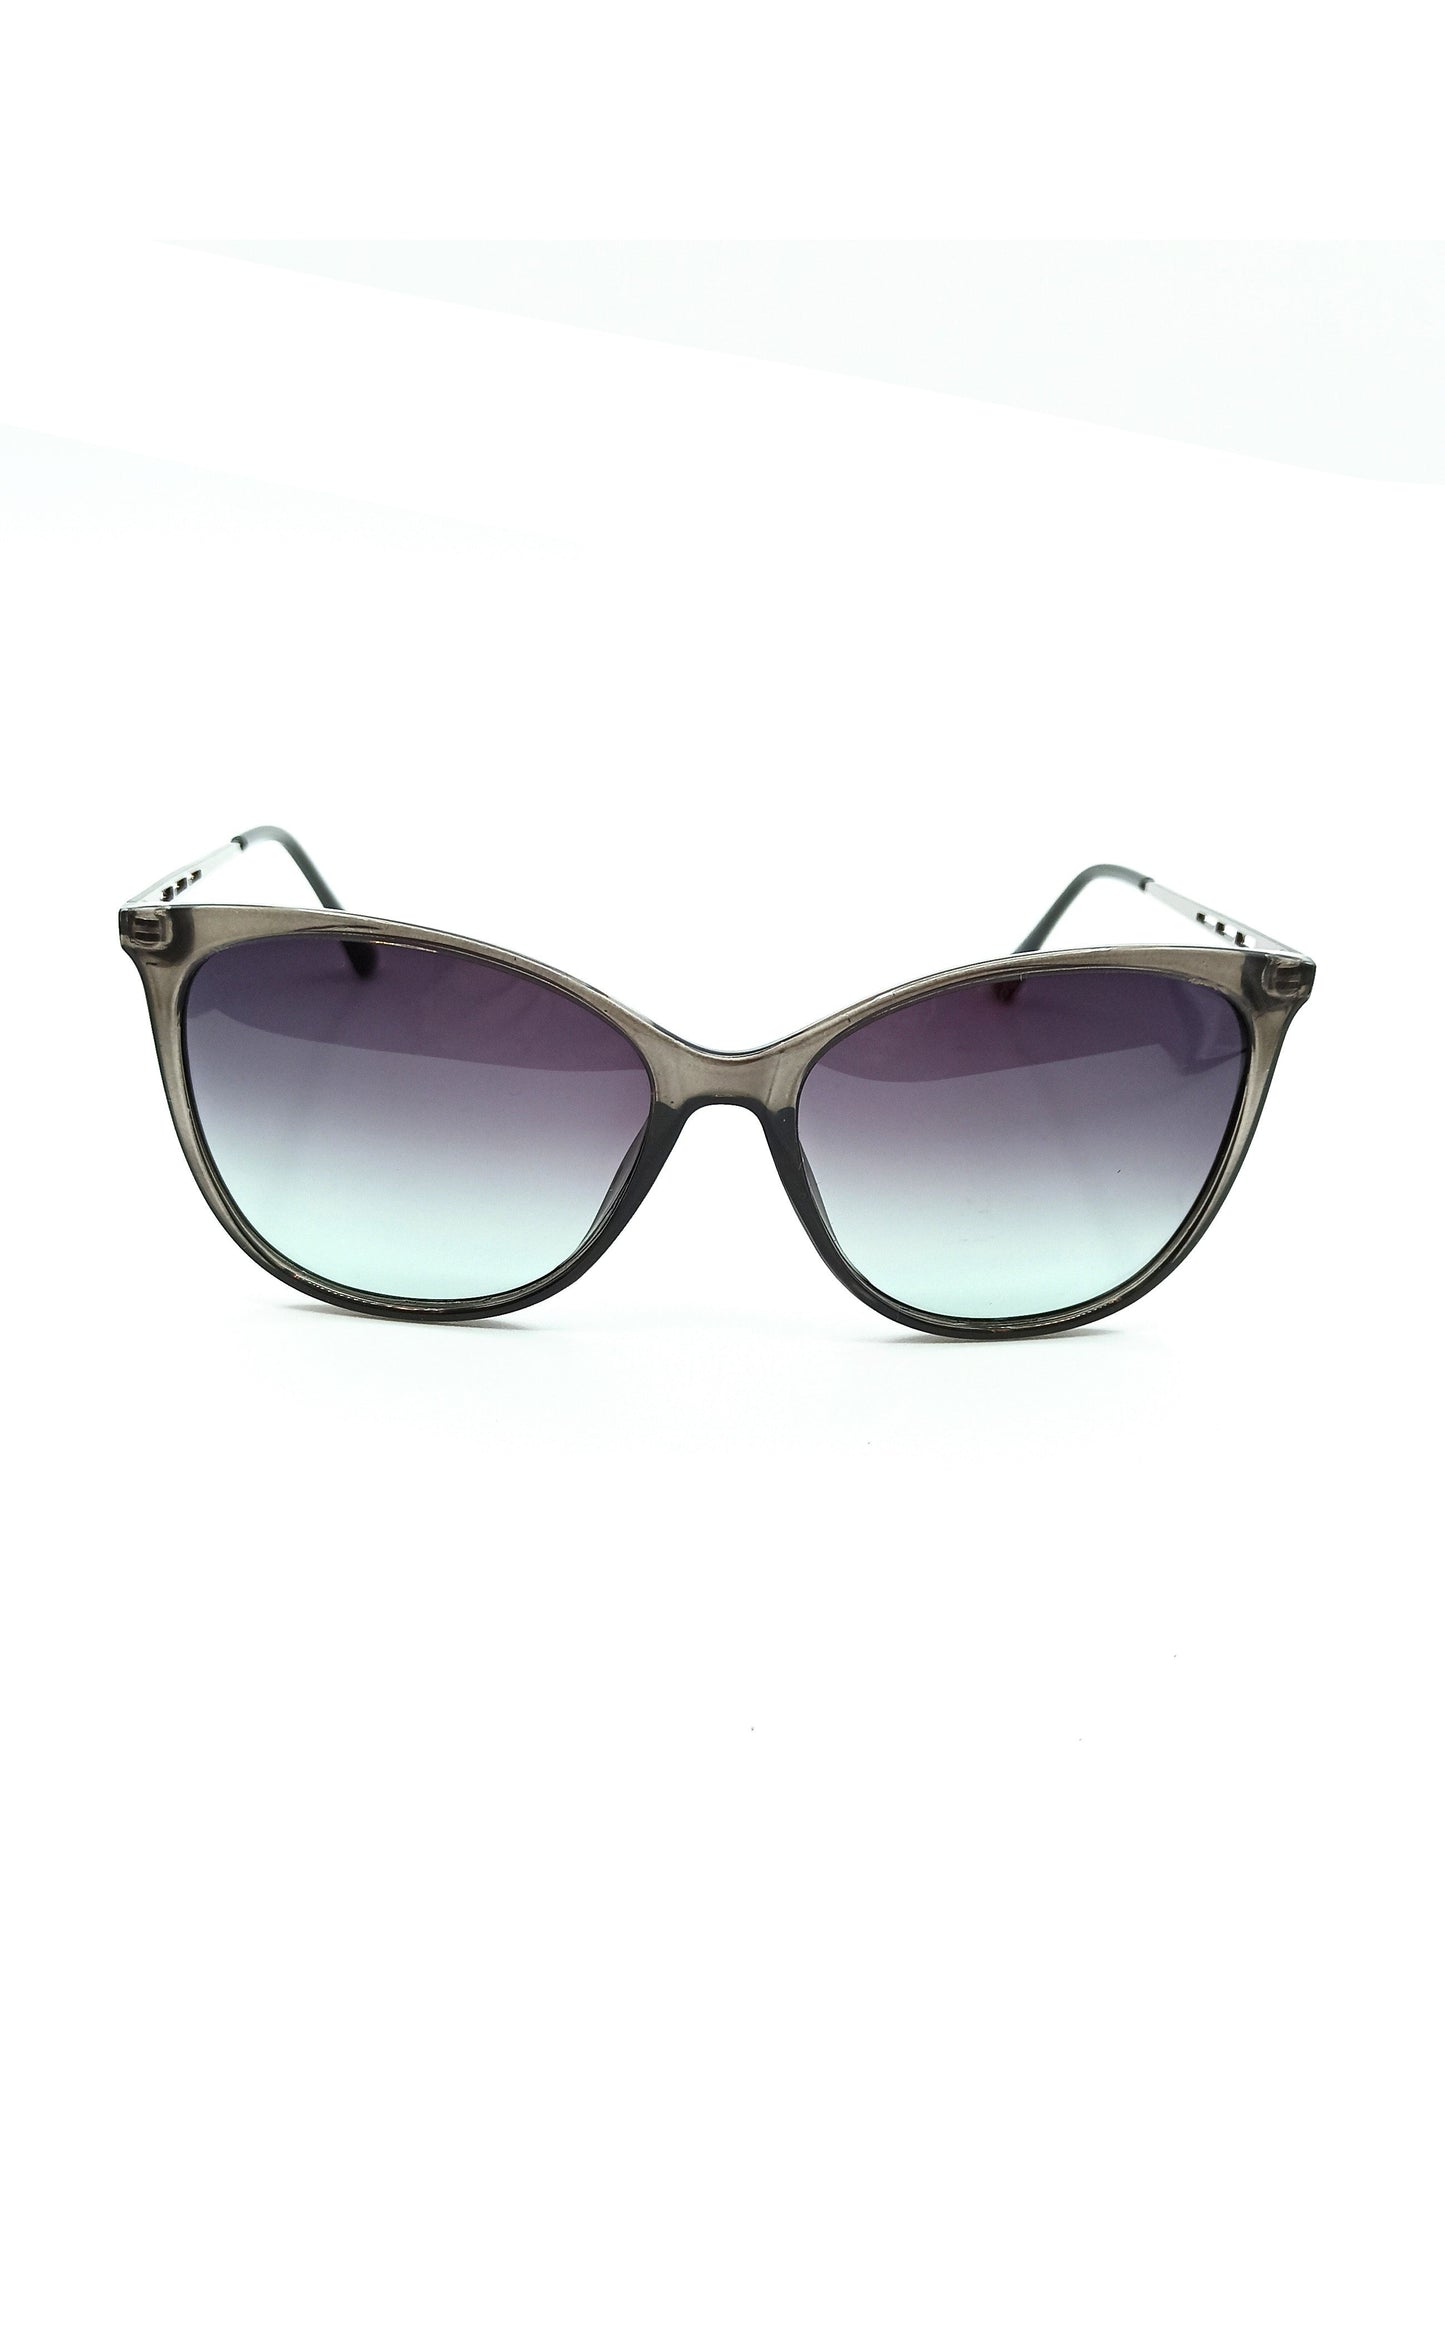 Polarized sunglasses for women Qoolst Valerie 